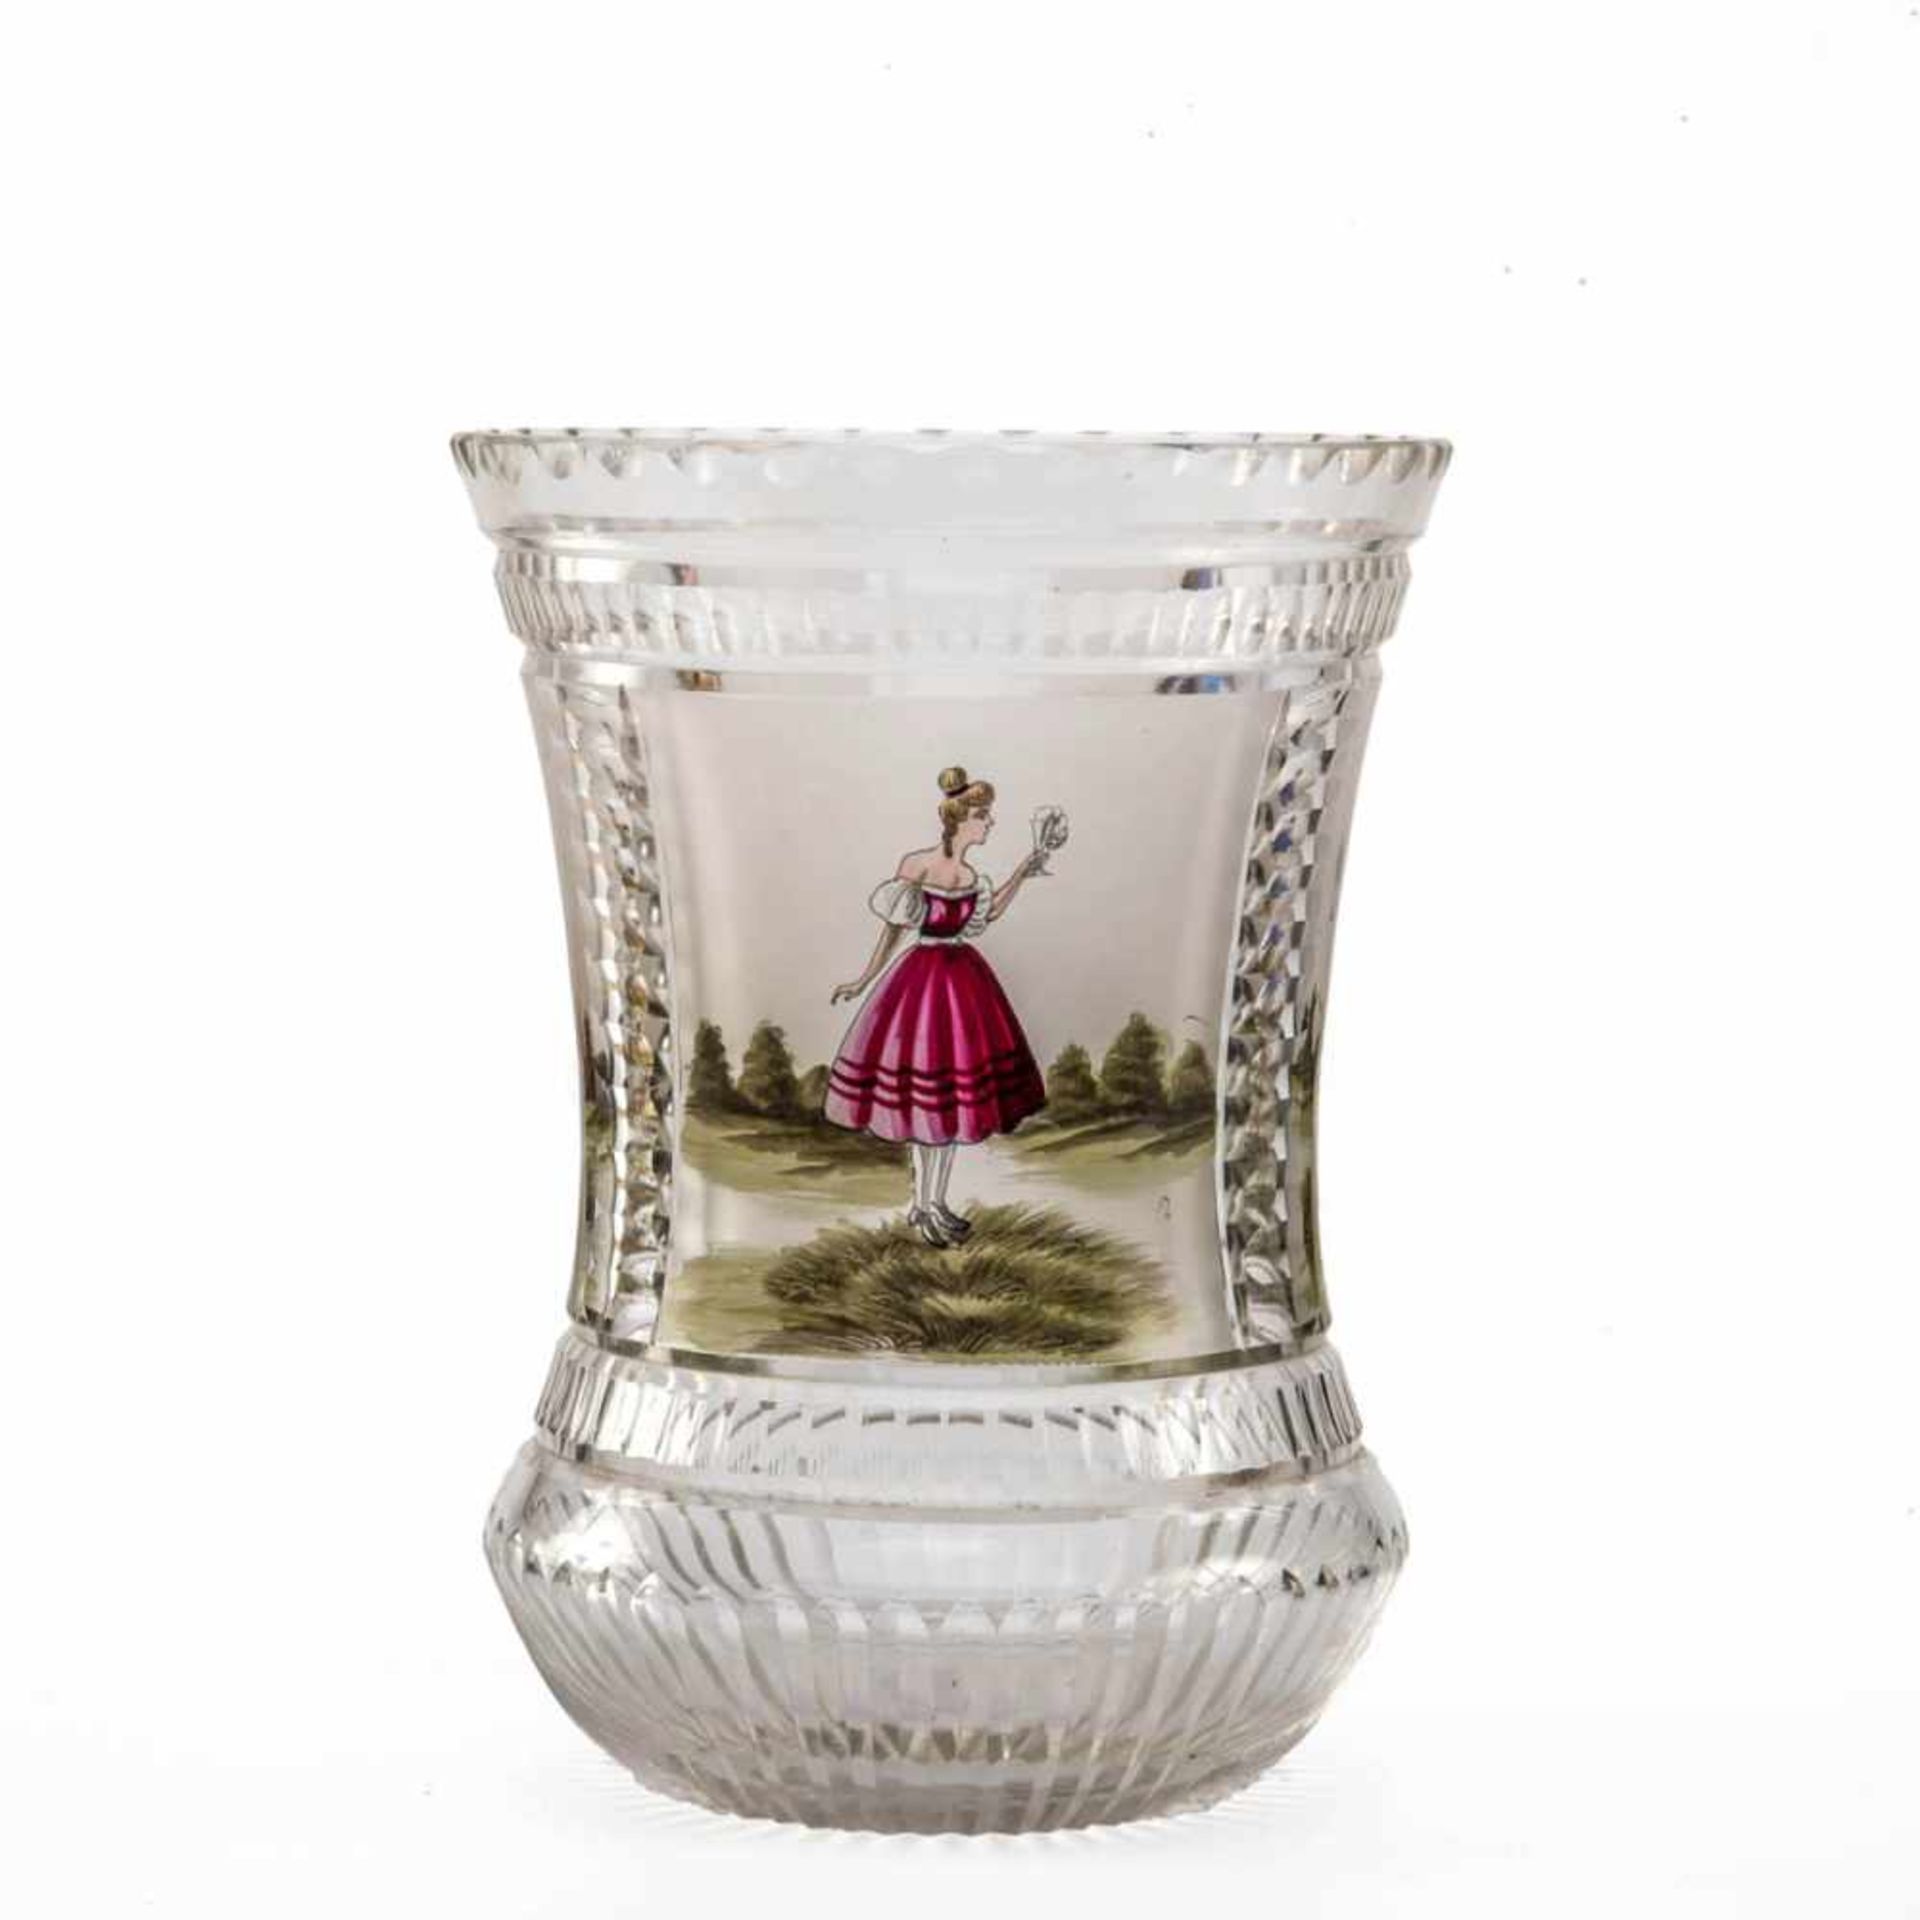 Ziervase, Böhmen 19. Jh. Farbloses Glas, mit eingeschliffenen Facetten, Korpus in der Mitte leicht